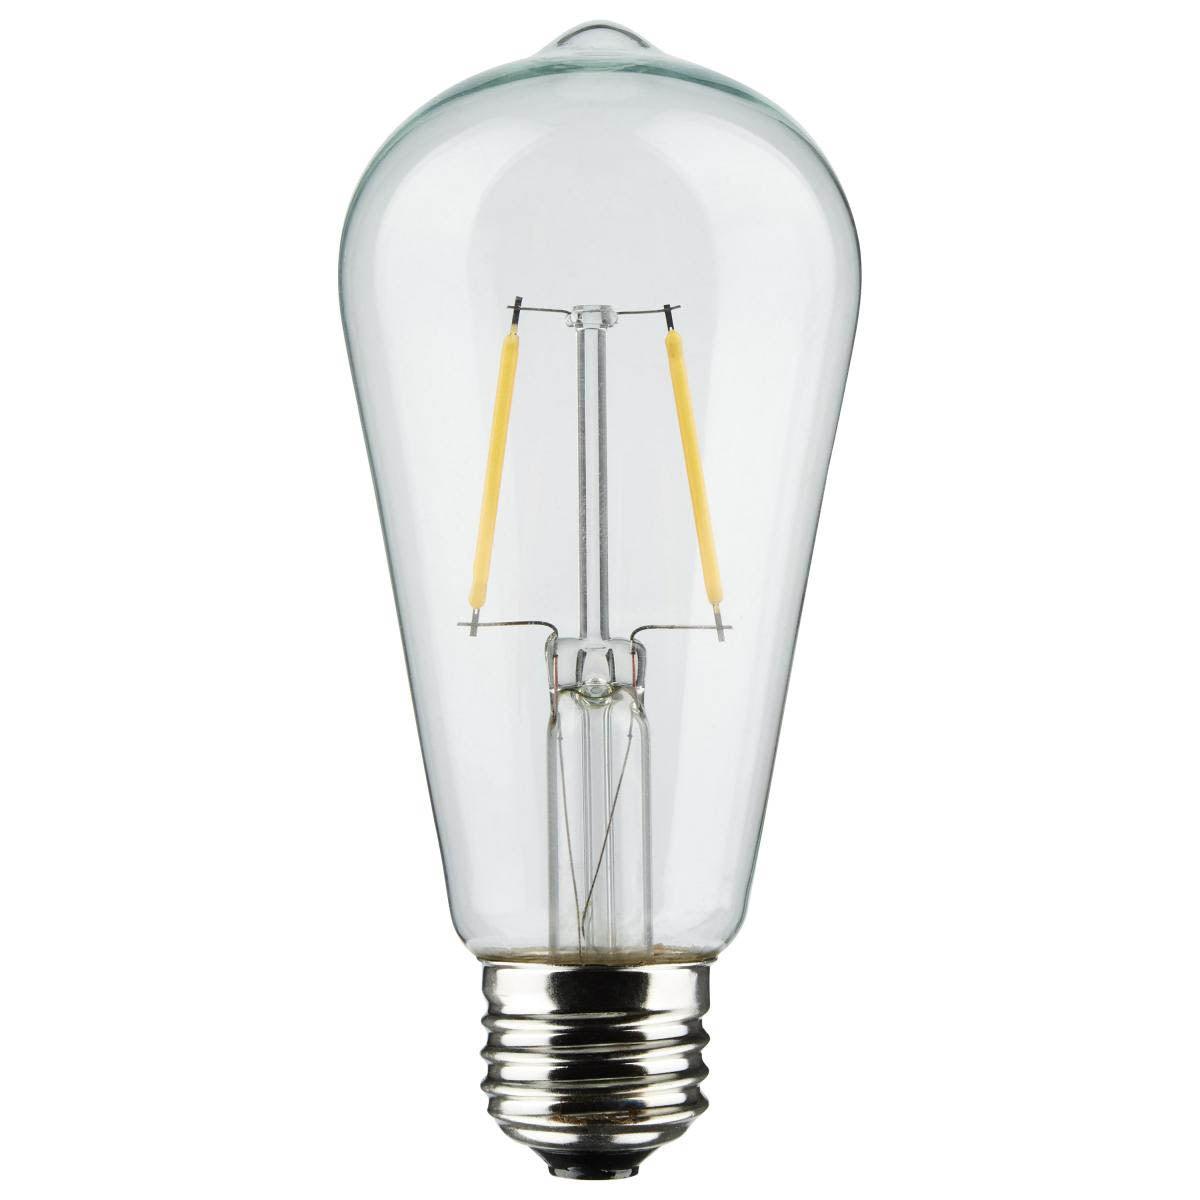 24 Feet LED String Light, 12 ST19 bulbs, Warm White 2200K, 120V, Indoor/Outdoor - Bees Lighting